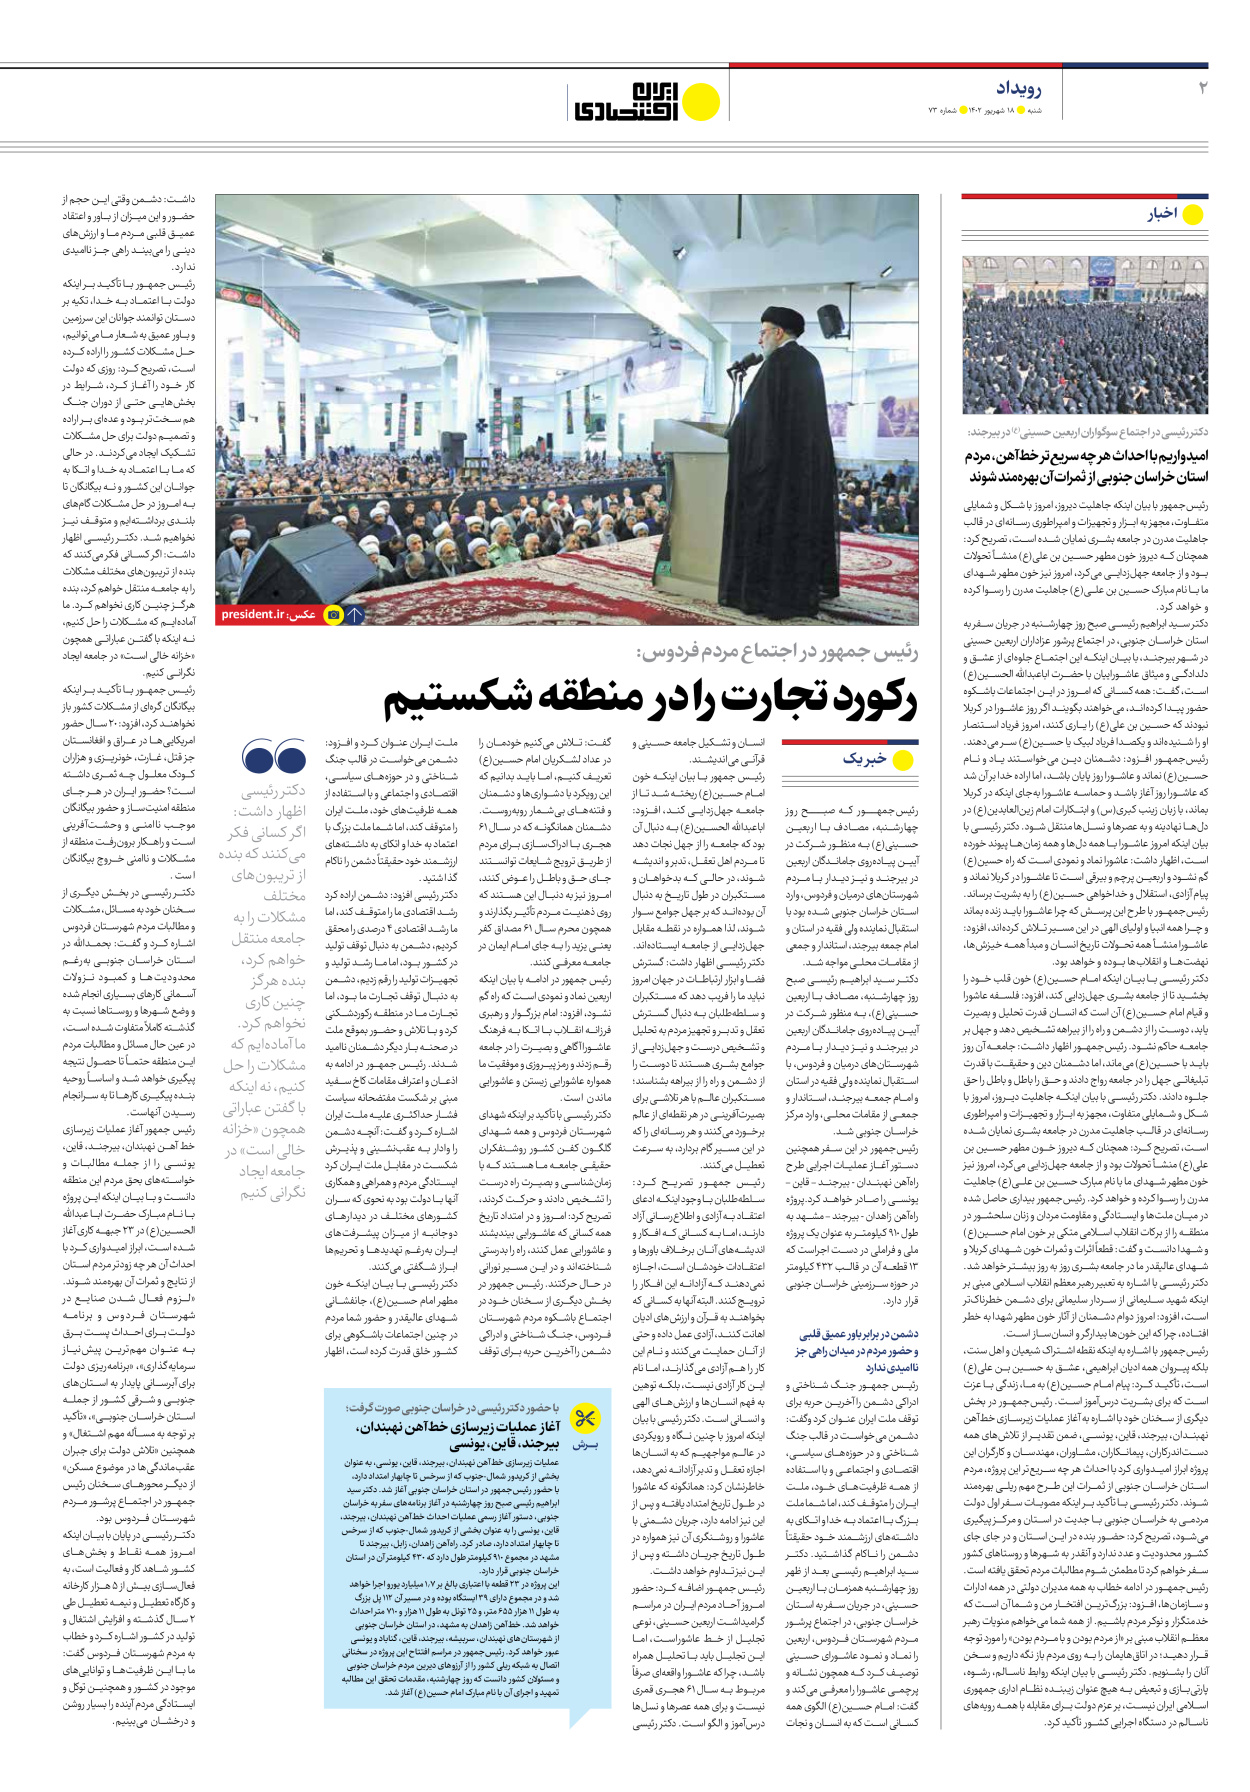 روزنامه ایران اقتصادی - شماره هفتاد و سه - ۱۸ شهریور ۱۴۰۲ - صفحه ۲